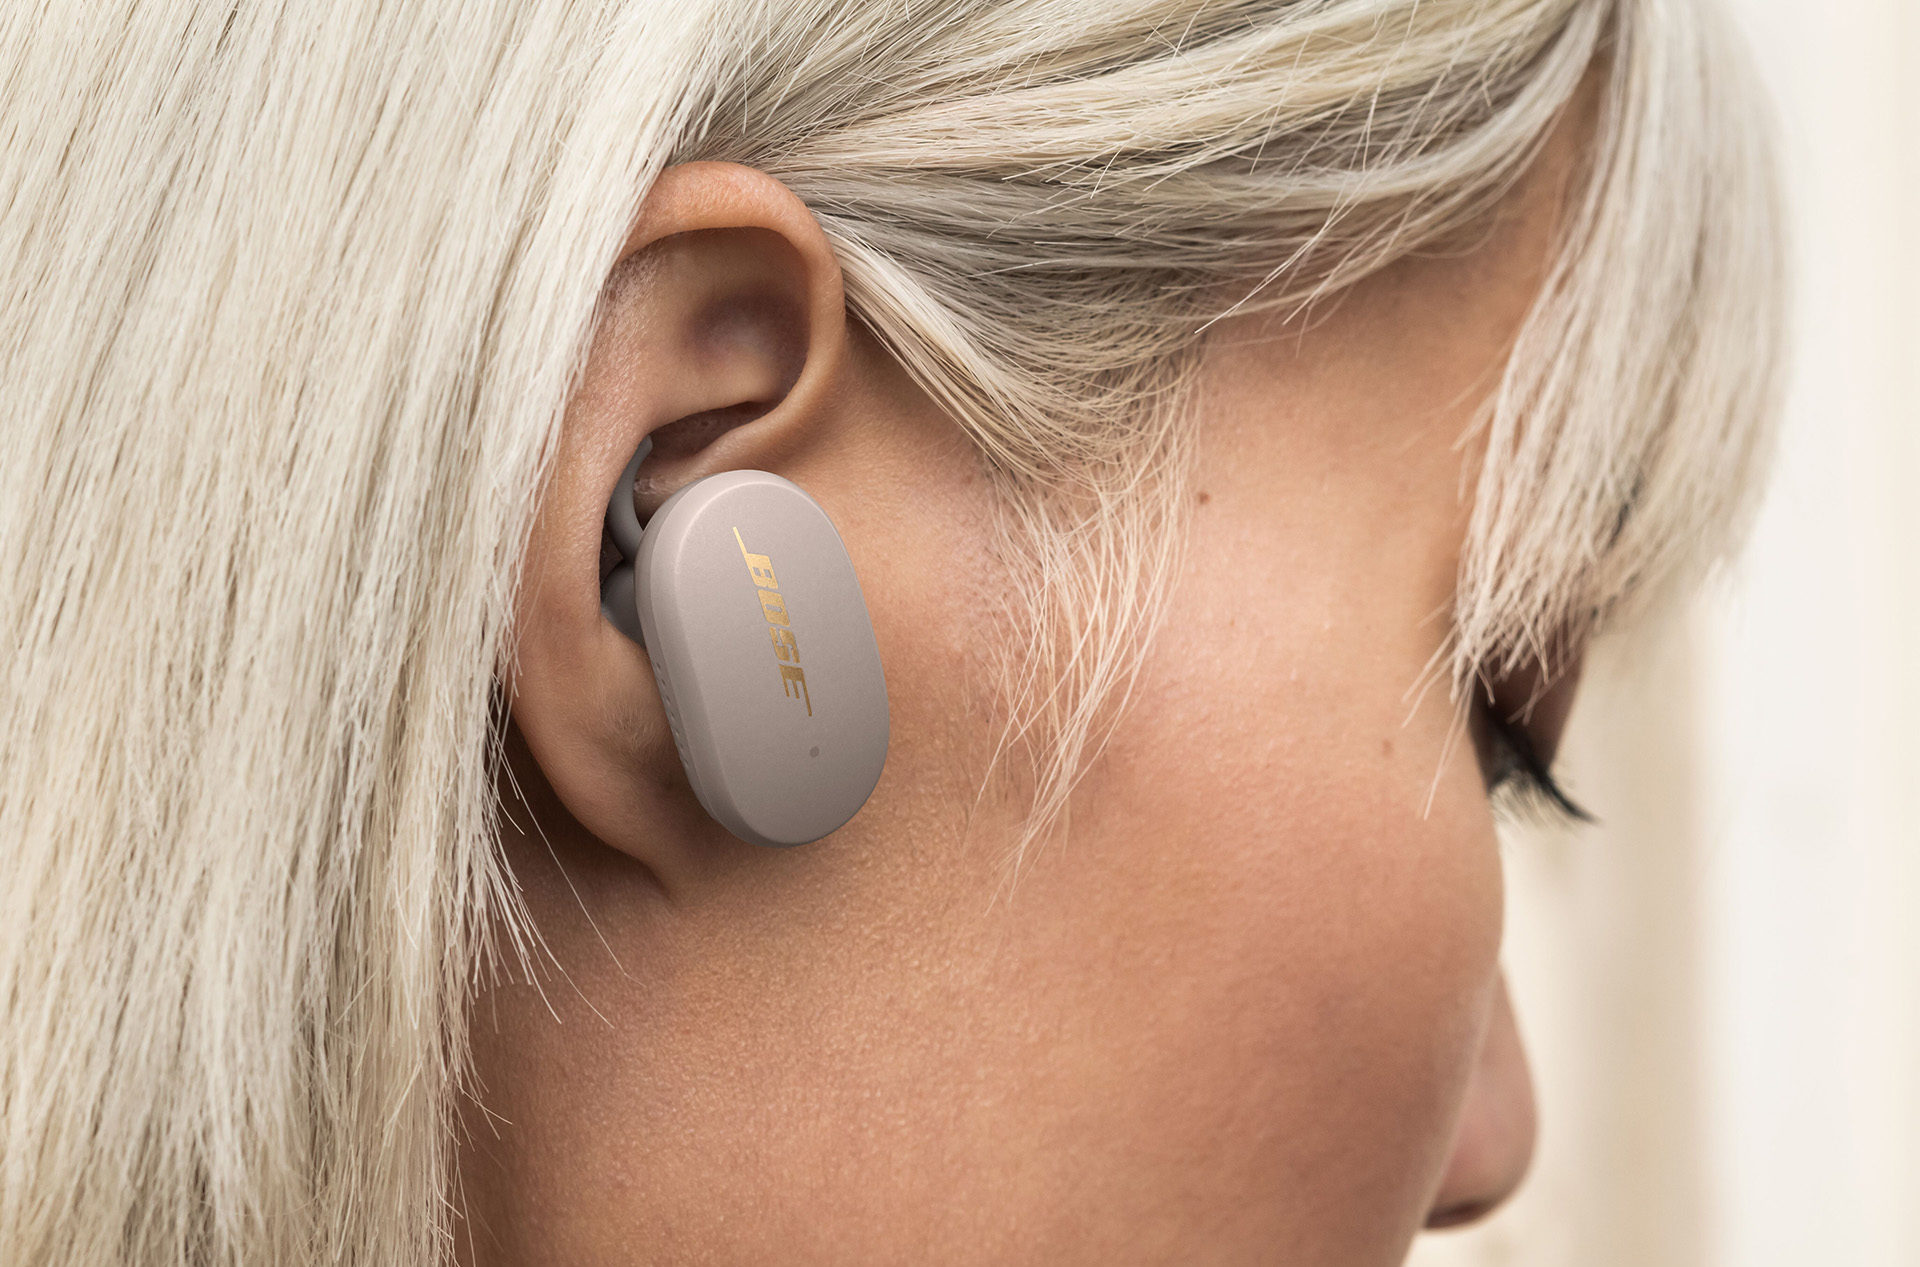 Bose aktualizuje oprogramowanie słuchawek QuietComfort Earbuds